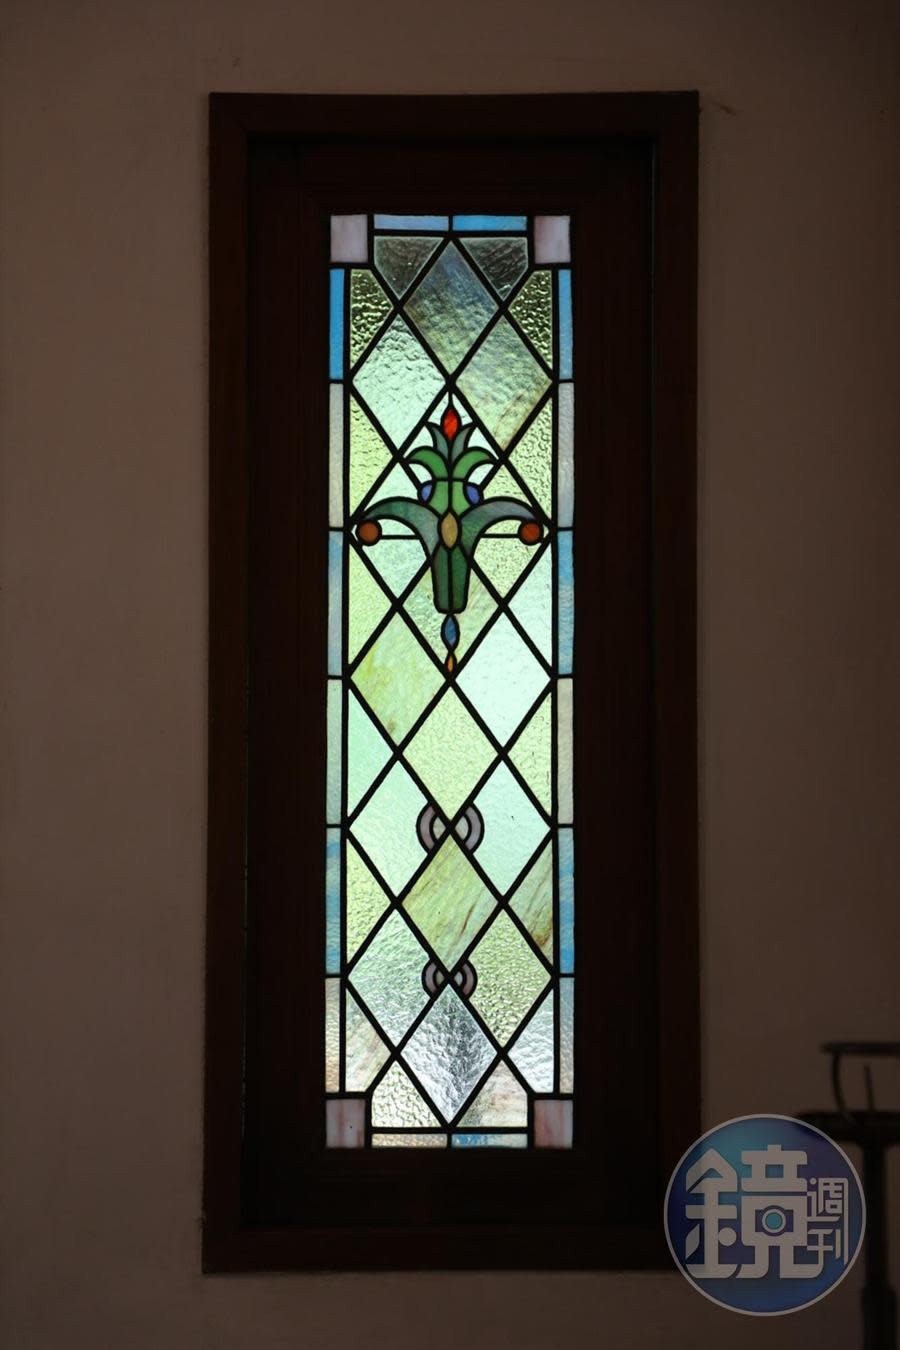 日式老屋中鮮少見到的彩繪玻璃窗。